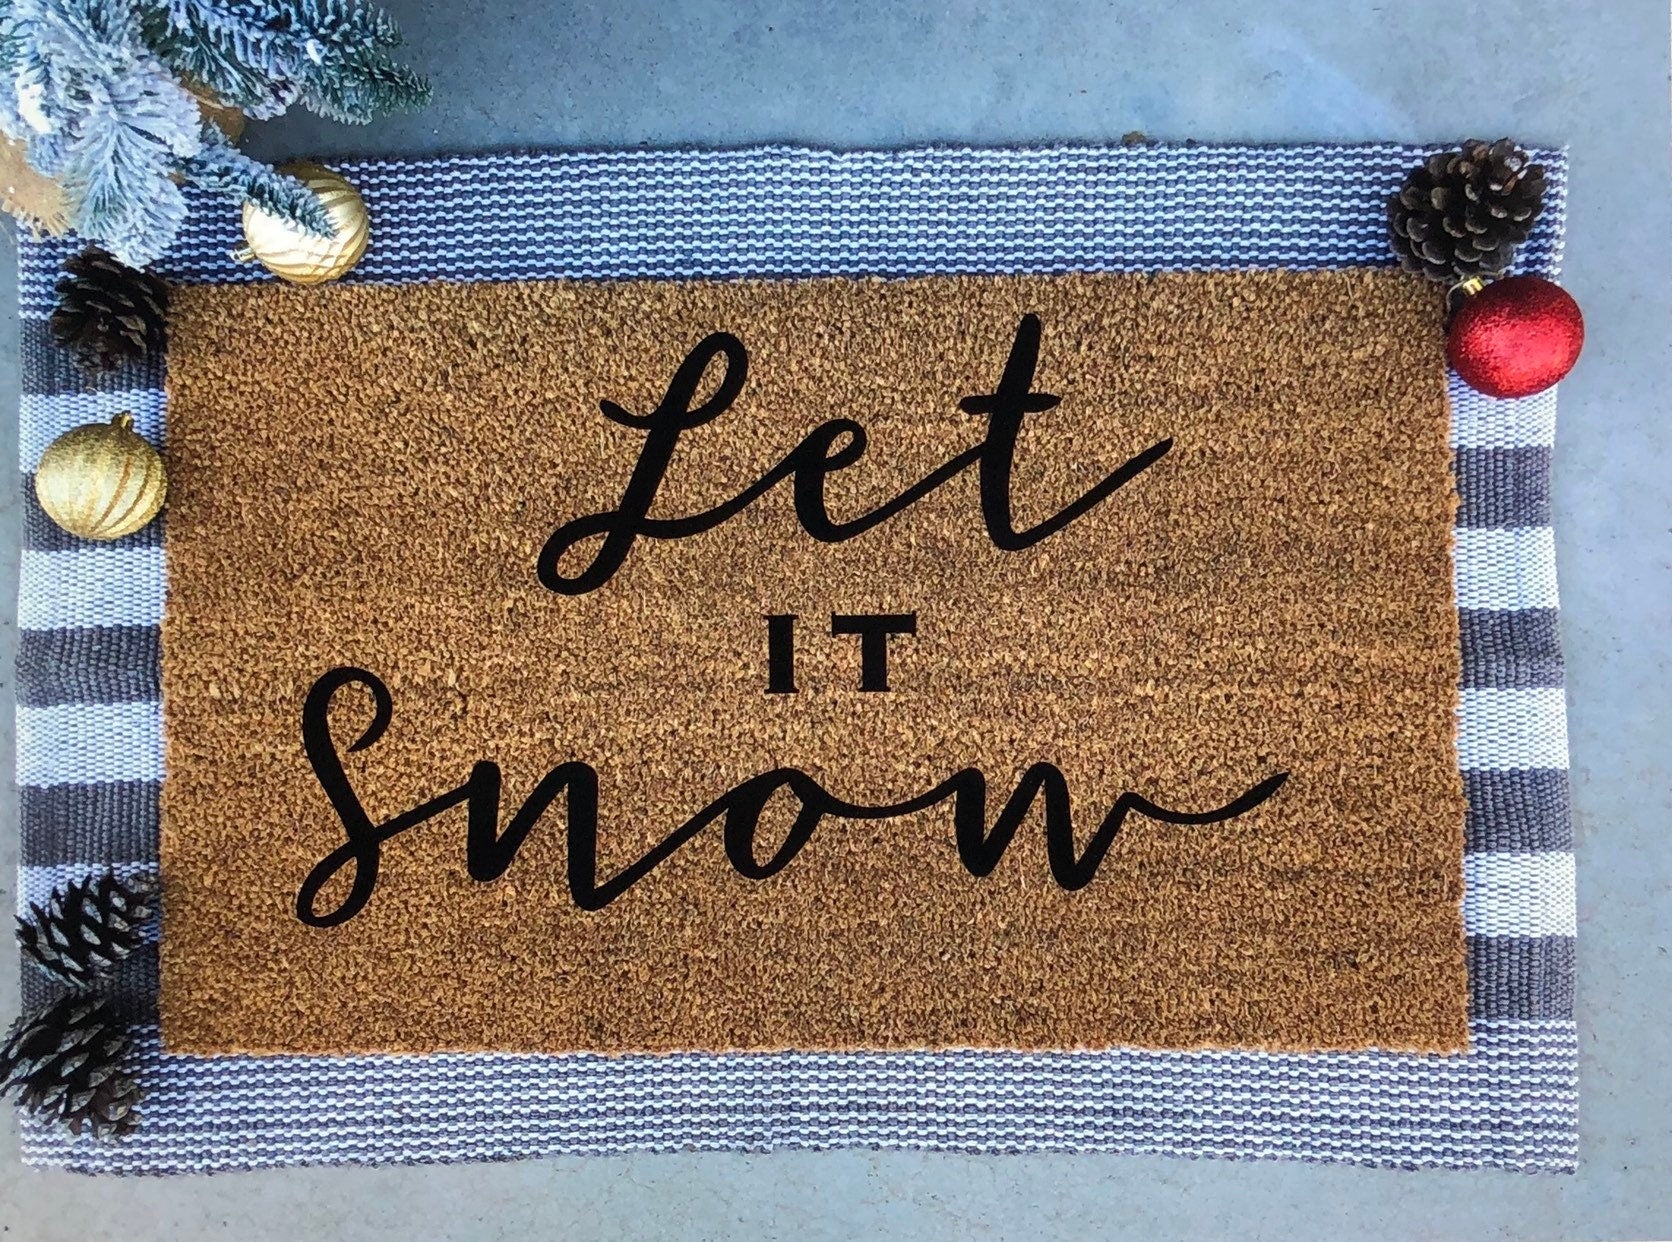 Let it Snow Doormat, Christmas Doormat